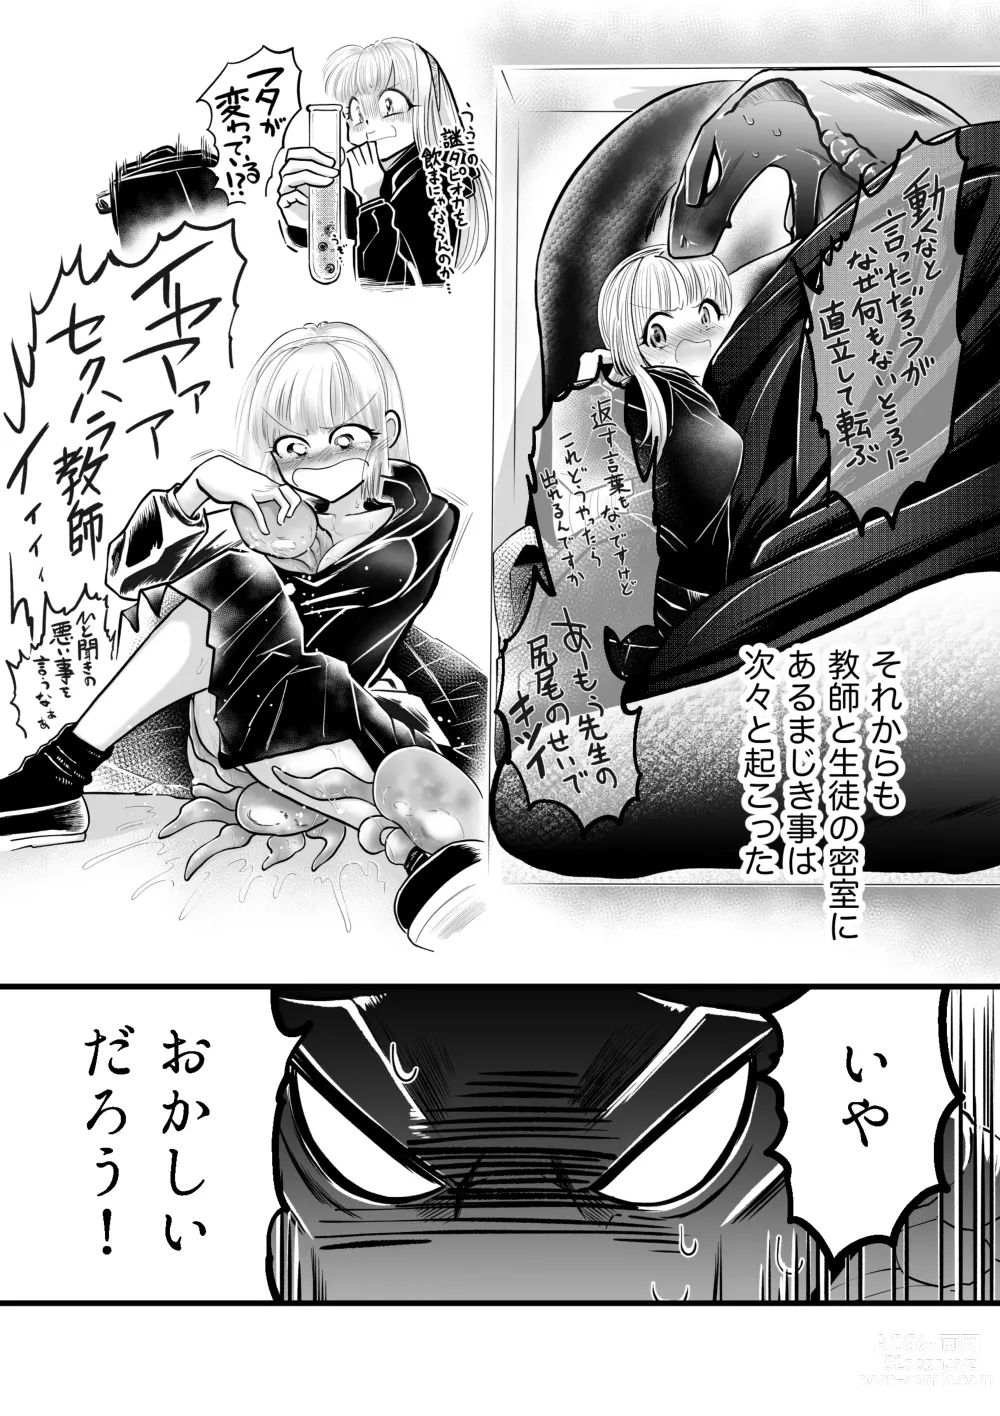 Page 10 of doujinshi Dakatsu no Gotoku Osoreteita Sensei to Kazukazu no Ero Happening ni Mimawarete Kindan no Kankaku Shadan Otoshiana Kouishou Chiryou